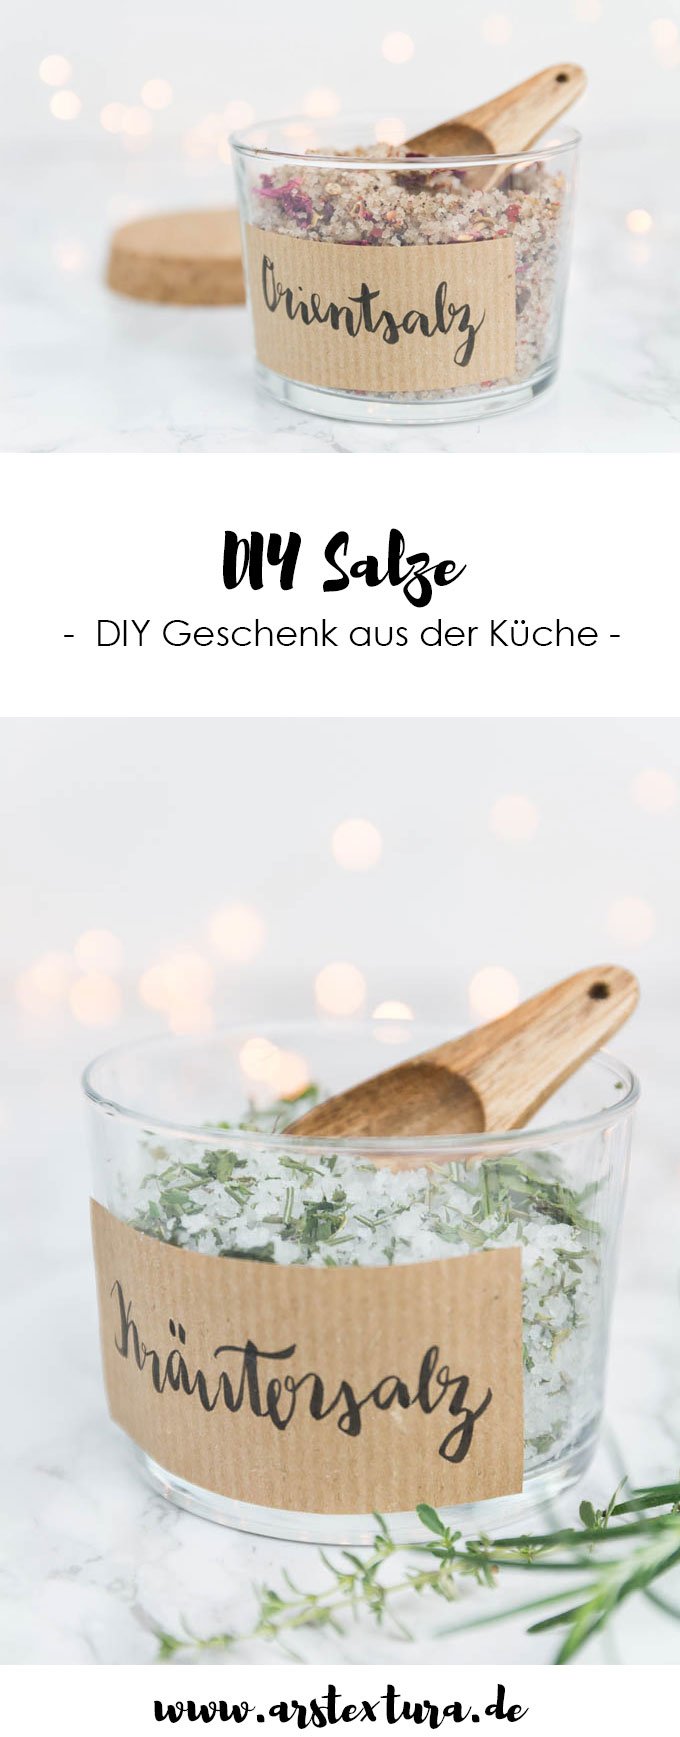 DIY Kräutersalz und Gewürzsalz | DIY Geschenk aus der Küche | ars textura DIY Blog